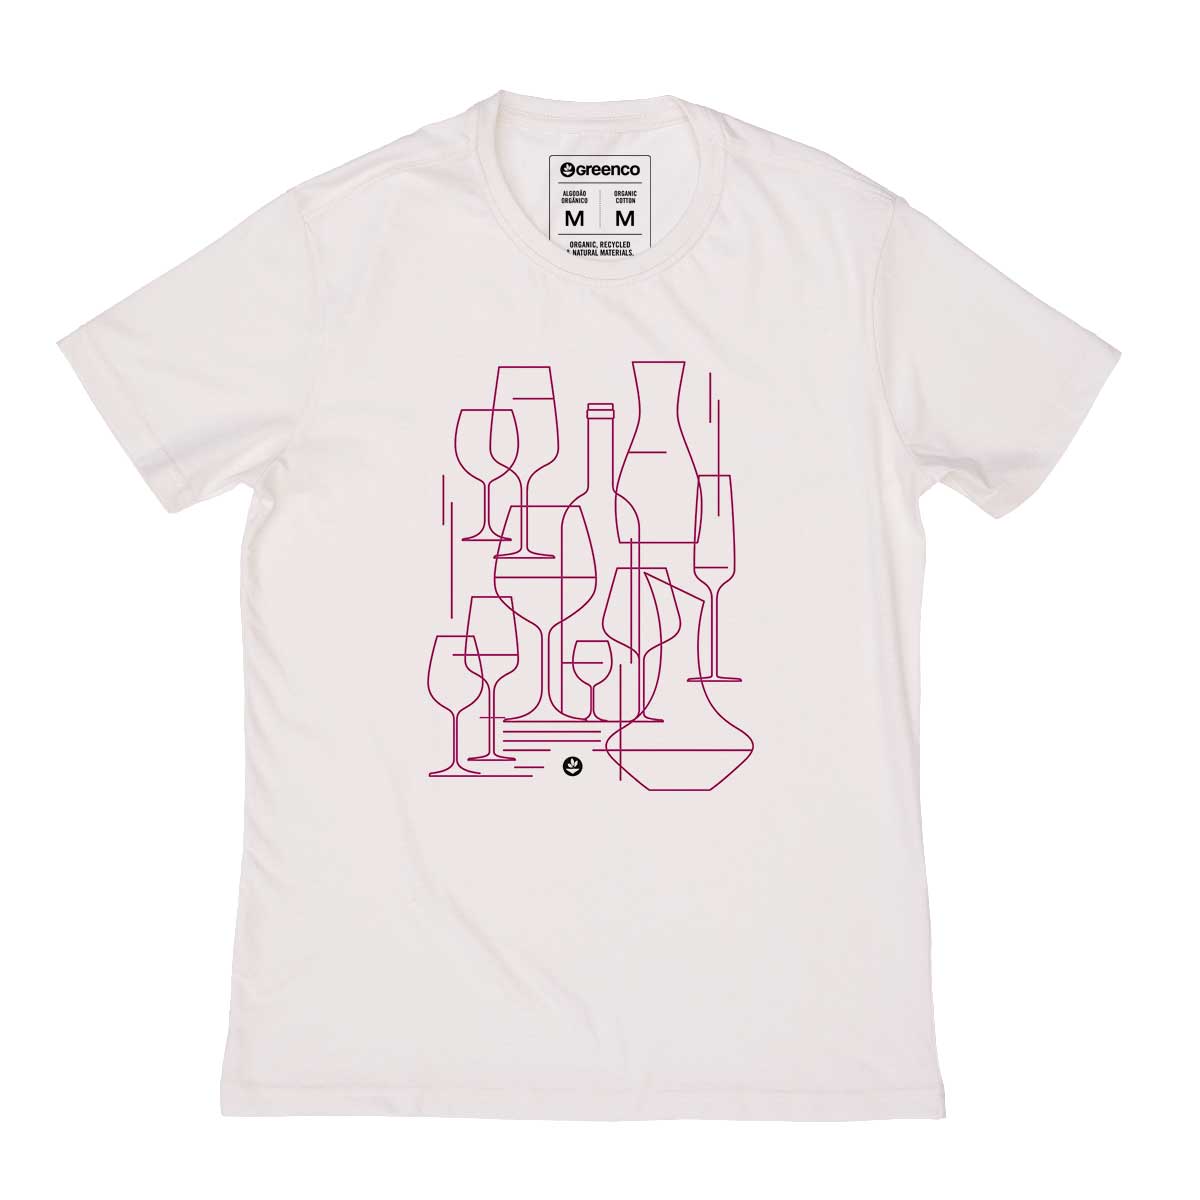 ganic Cotton Men's T-shirt - Graphic Wine